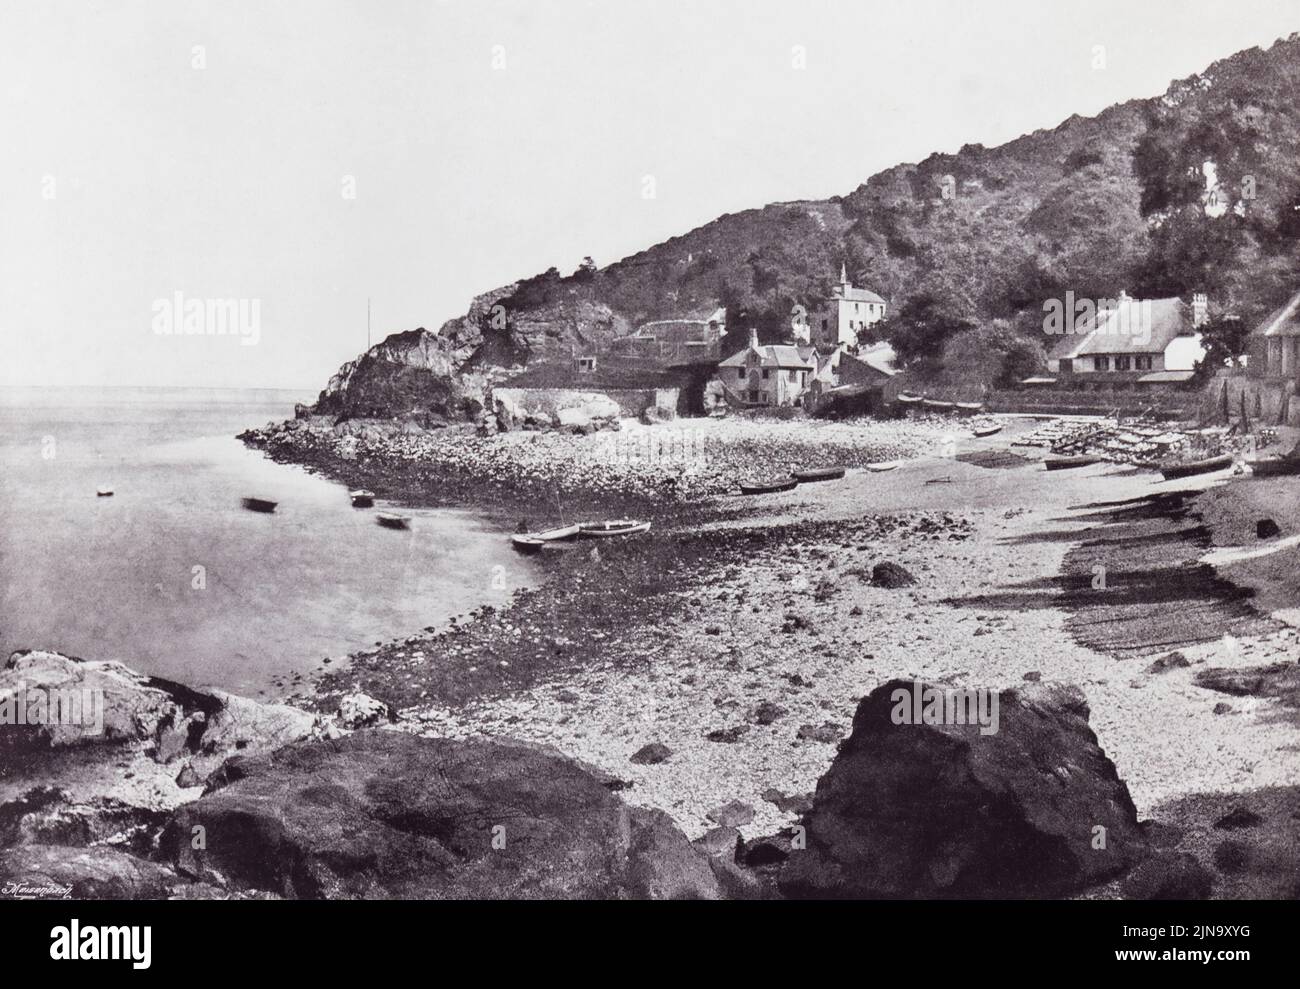 Torquay, Devon, Inglaterra. La playa en Babbicombe, visto aquí en el siglo 19th. De Alrededor de la Costa, un álbum de fotos de los principales lugares de interés de la costa en Gran Bretaña e Irlanda publicado en Londres, 1895, por George Newnes Limited. Foto de stock